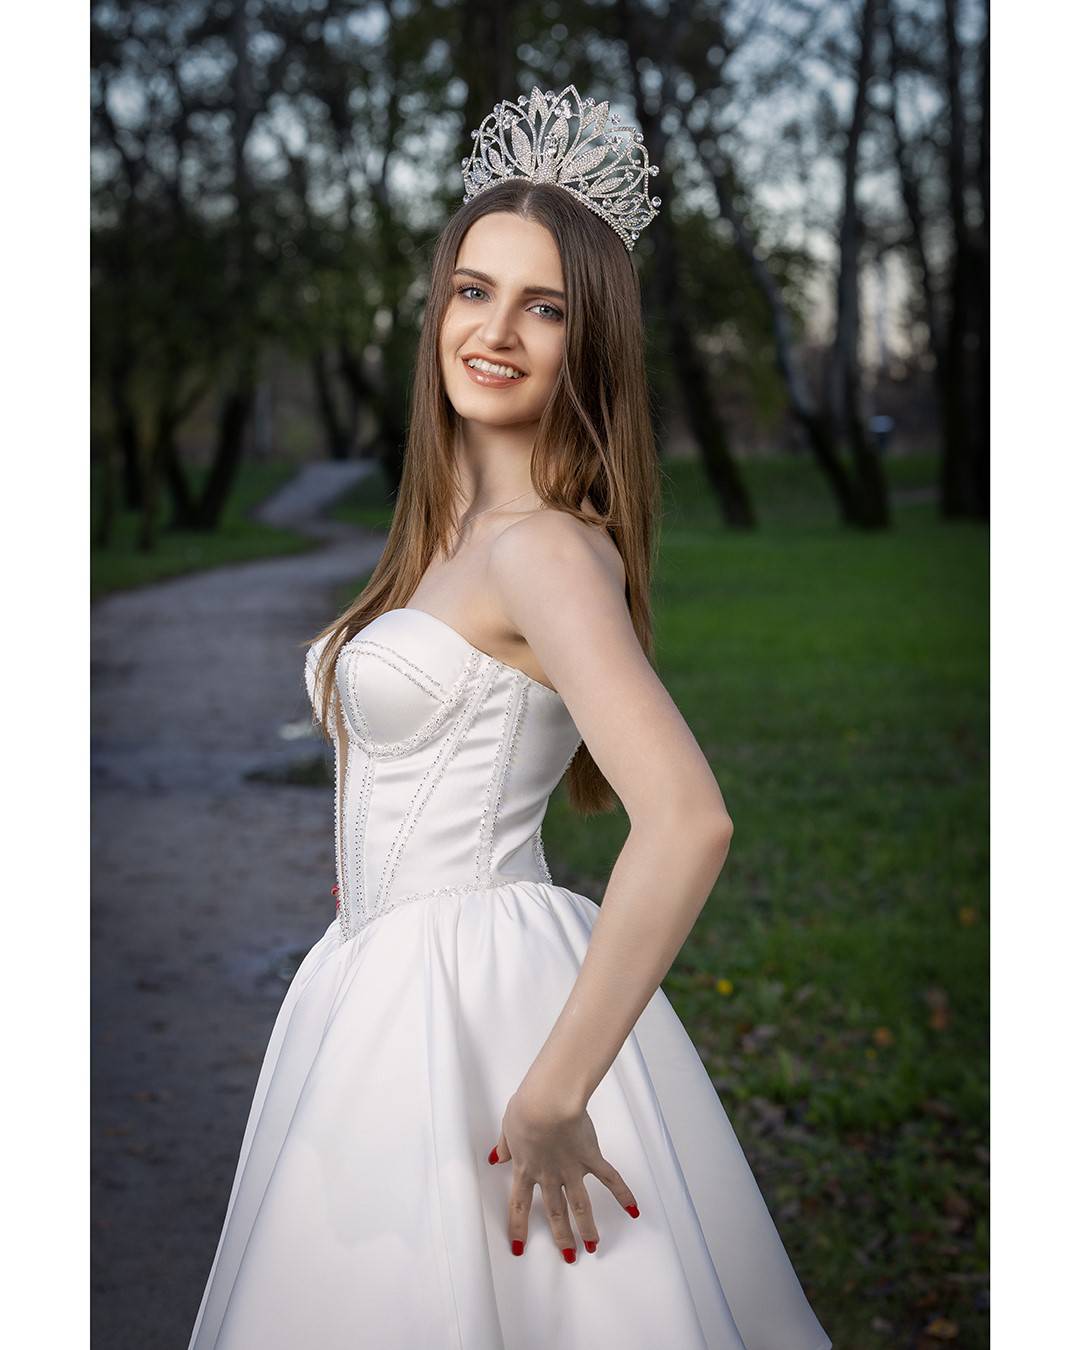 Miss turizma Hrvatske: 'Jedva čekam sutra prošetati u svojoj lijepoj nacionalnoj haljini...'